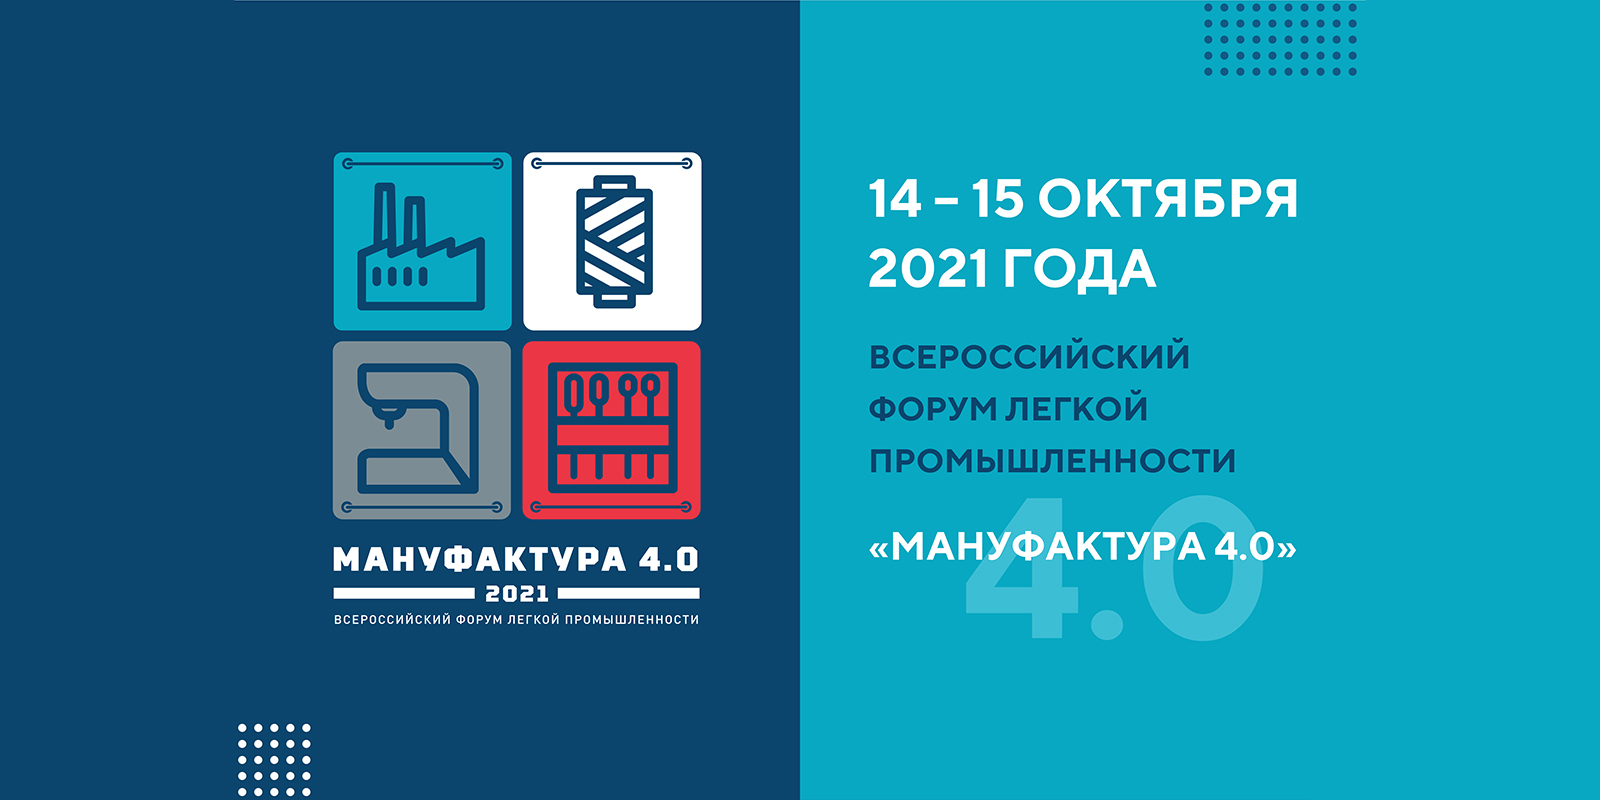 Современные технологии продаж и продвижения продукции обсудят на форуме «Мануфактура 4.0» в Ивановской области